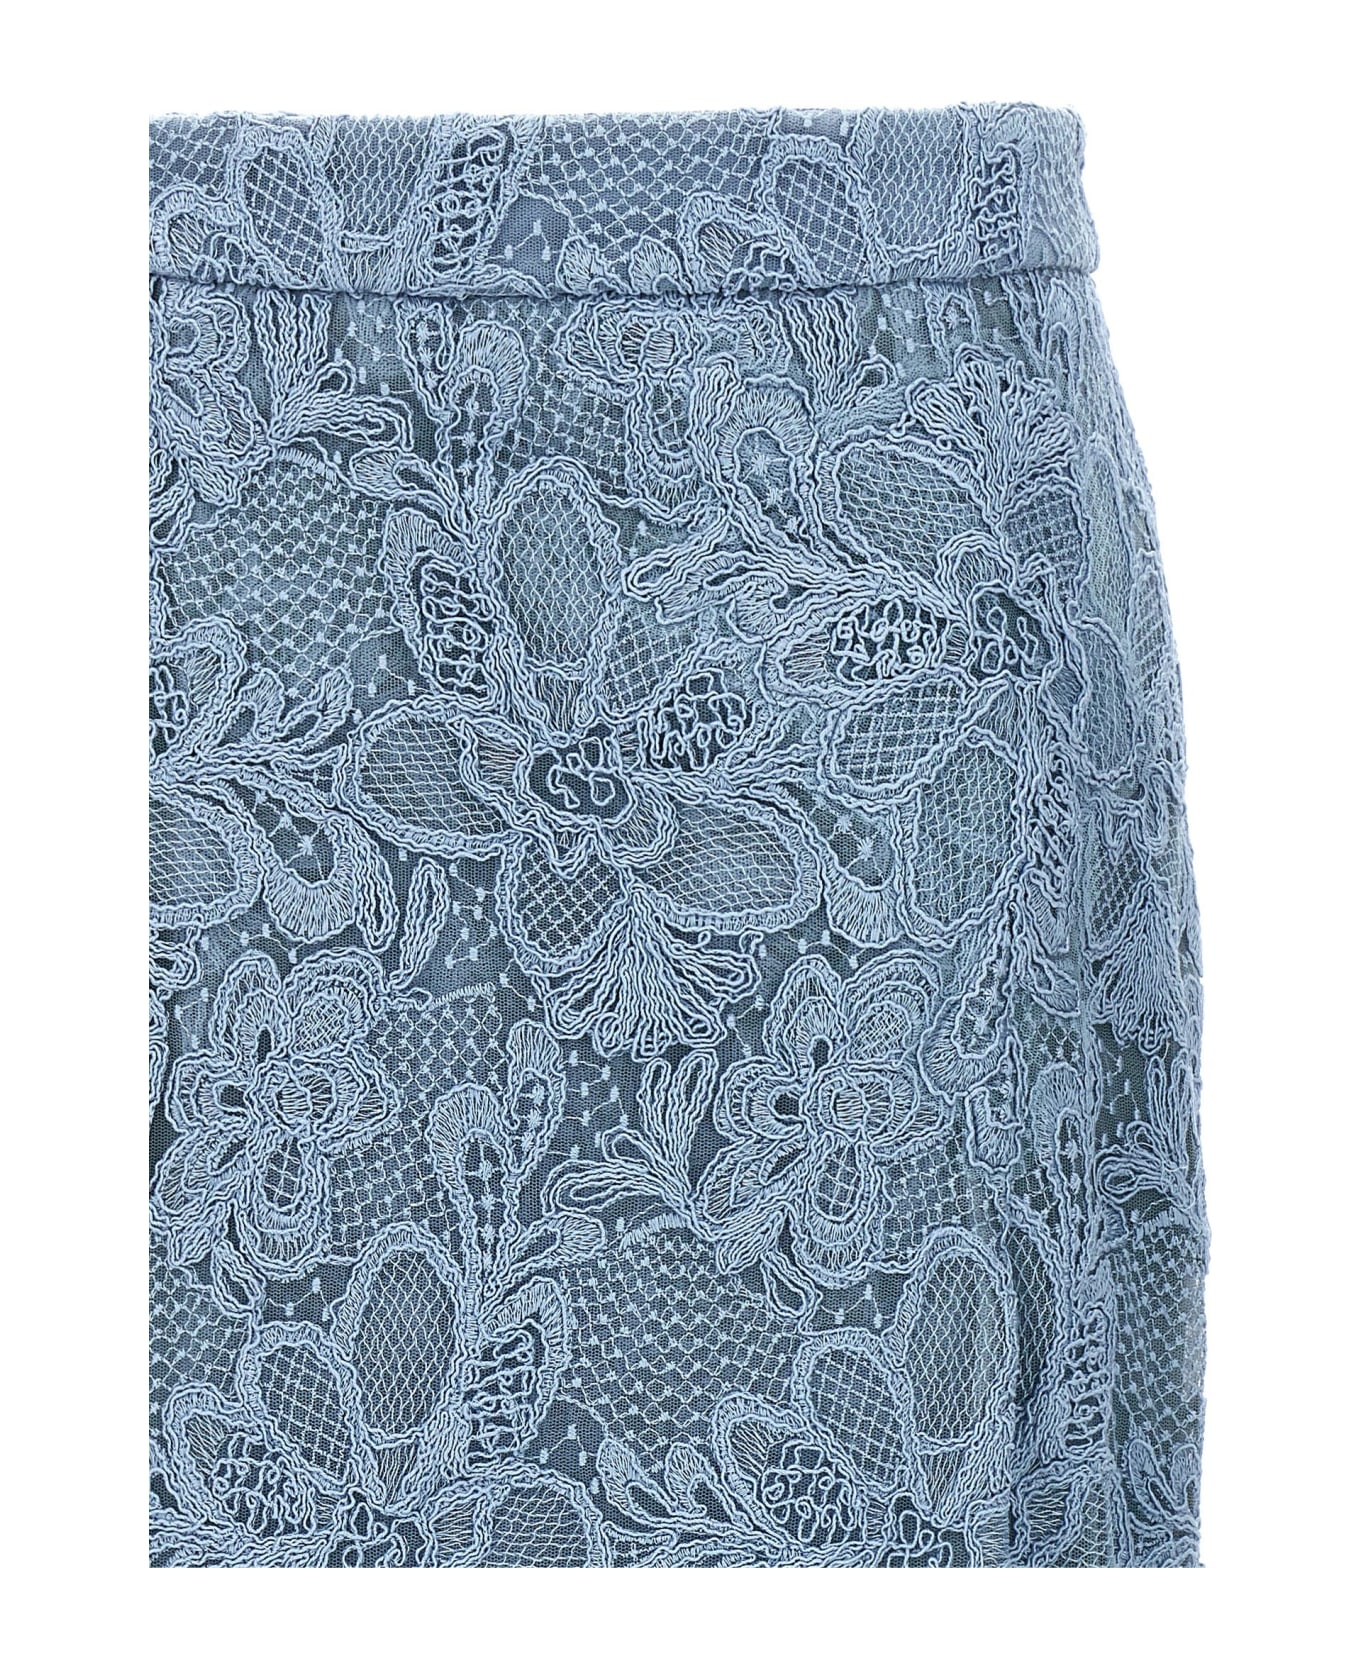 Ermanno Scervino Lace Skirt - Light Blue スカート